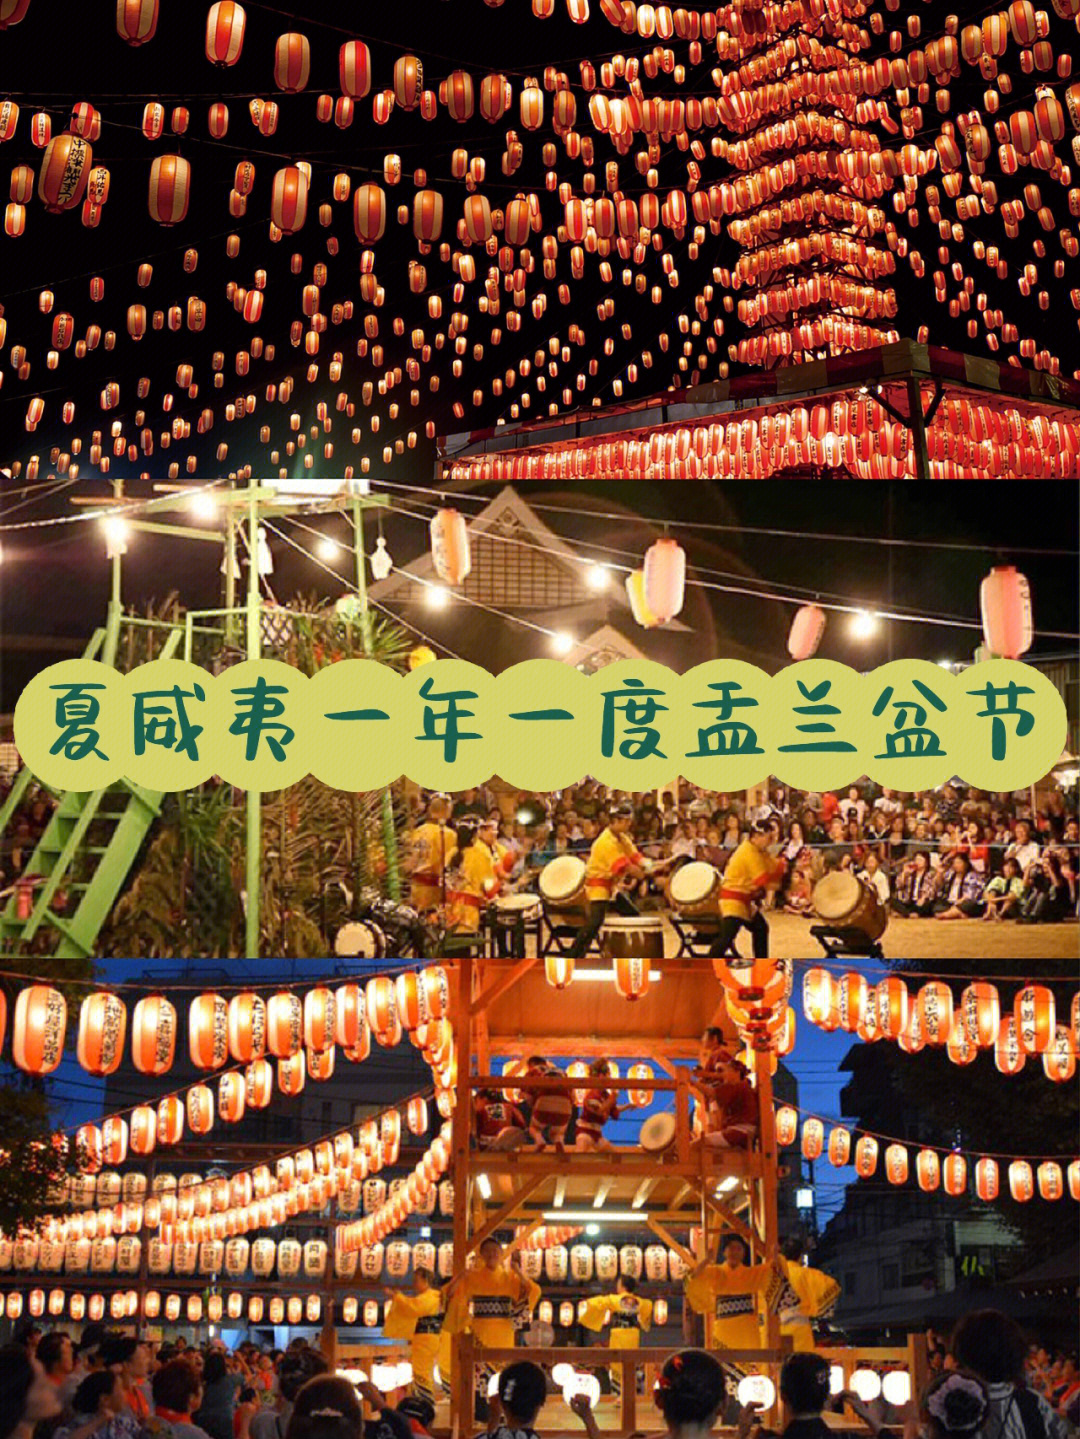 许多人都会加入其中～·96 盂兰盆节在日本,盂兰盆节是亲人聚集一